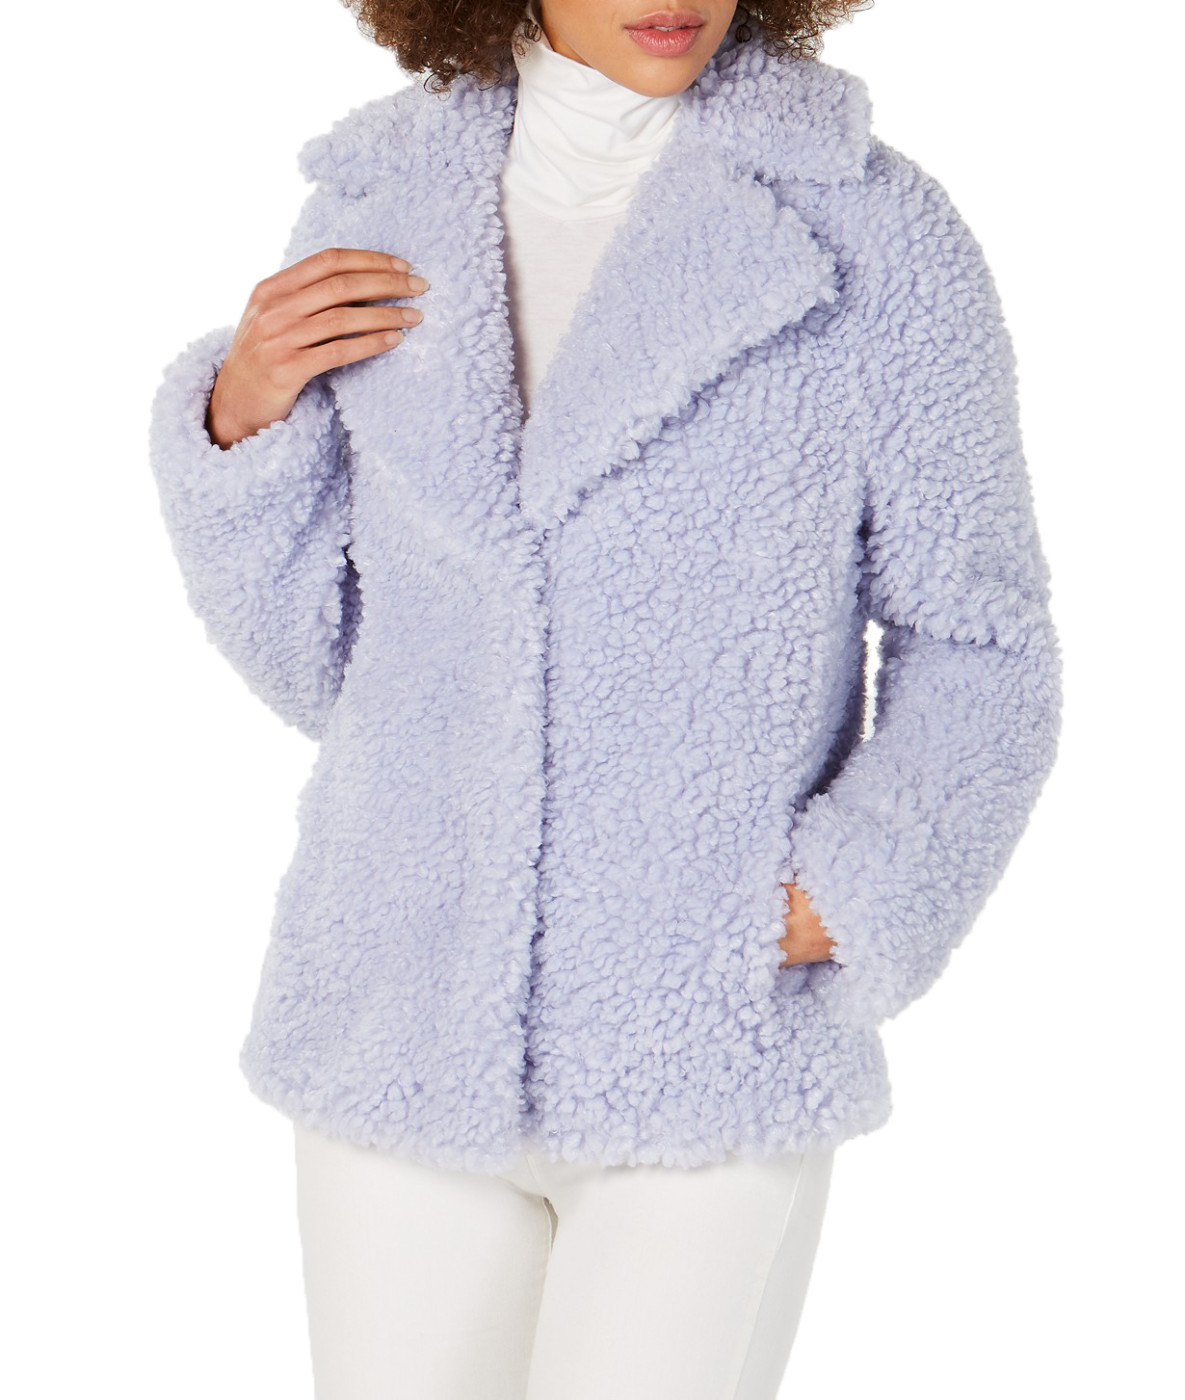 woocommerce-673321-2209615.cloudwaysapps.com-kensie-womens-purple-reversible-teddy-coat-jacket